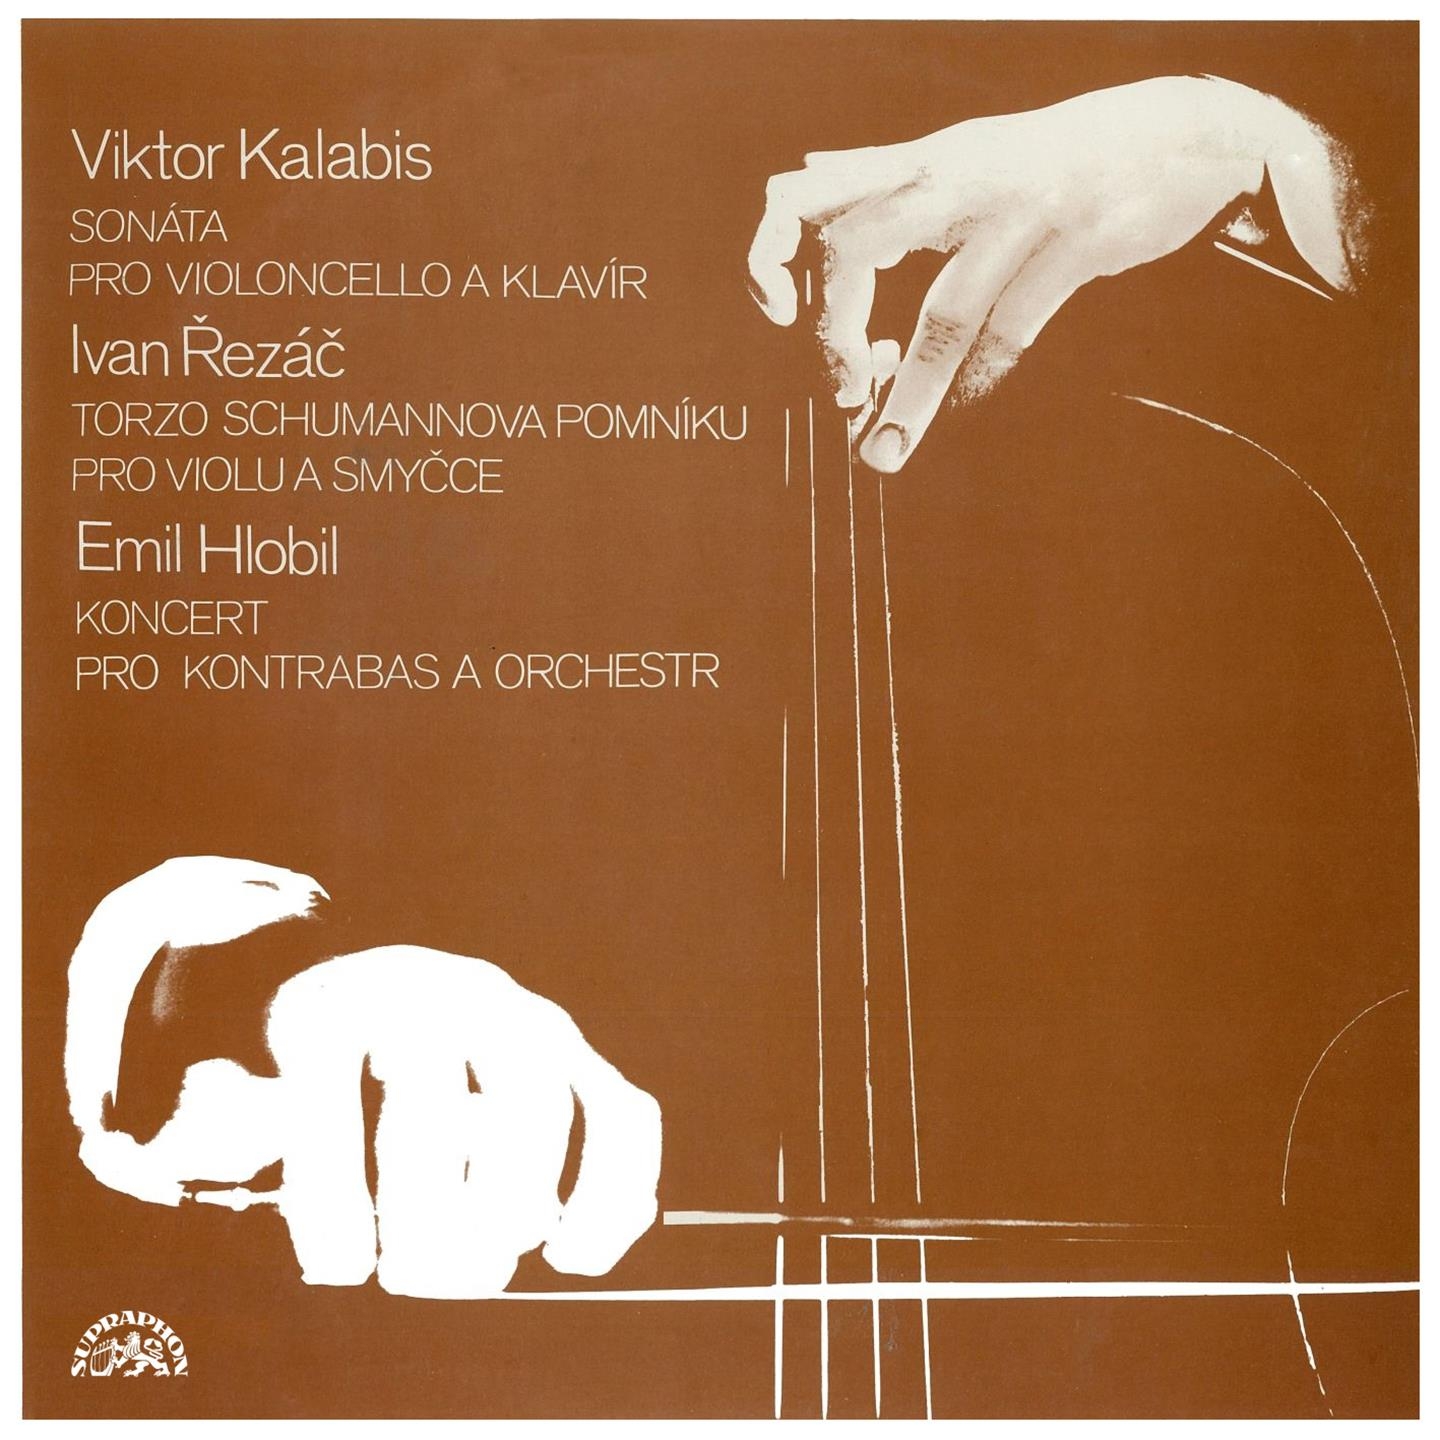 Cello Sonata, Op. 29: I. Allegro moderato